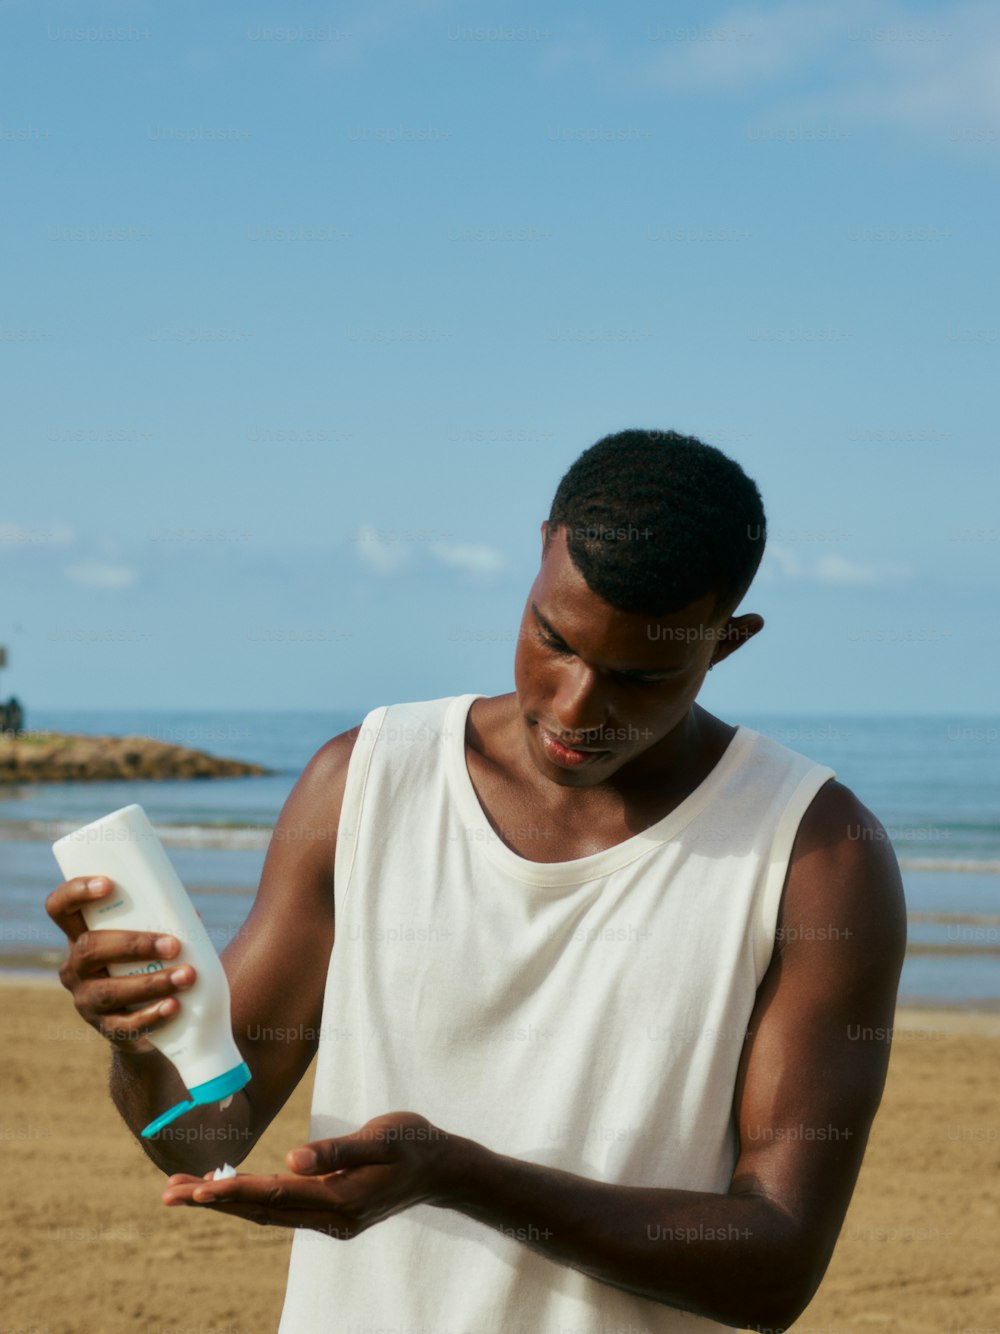 Ein Mann, der an einem Strand steht und eine Flasche hält